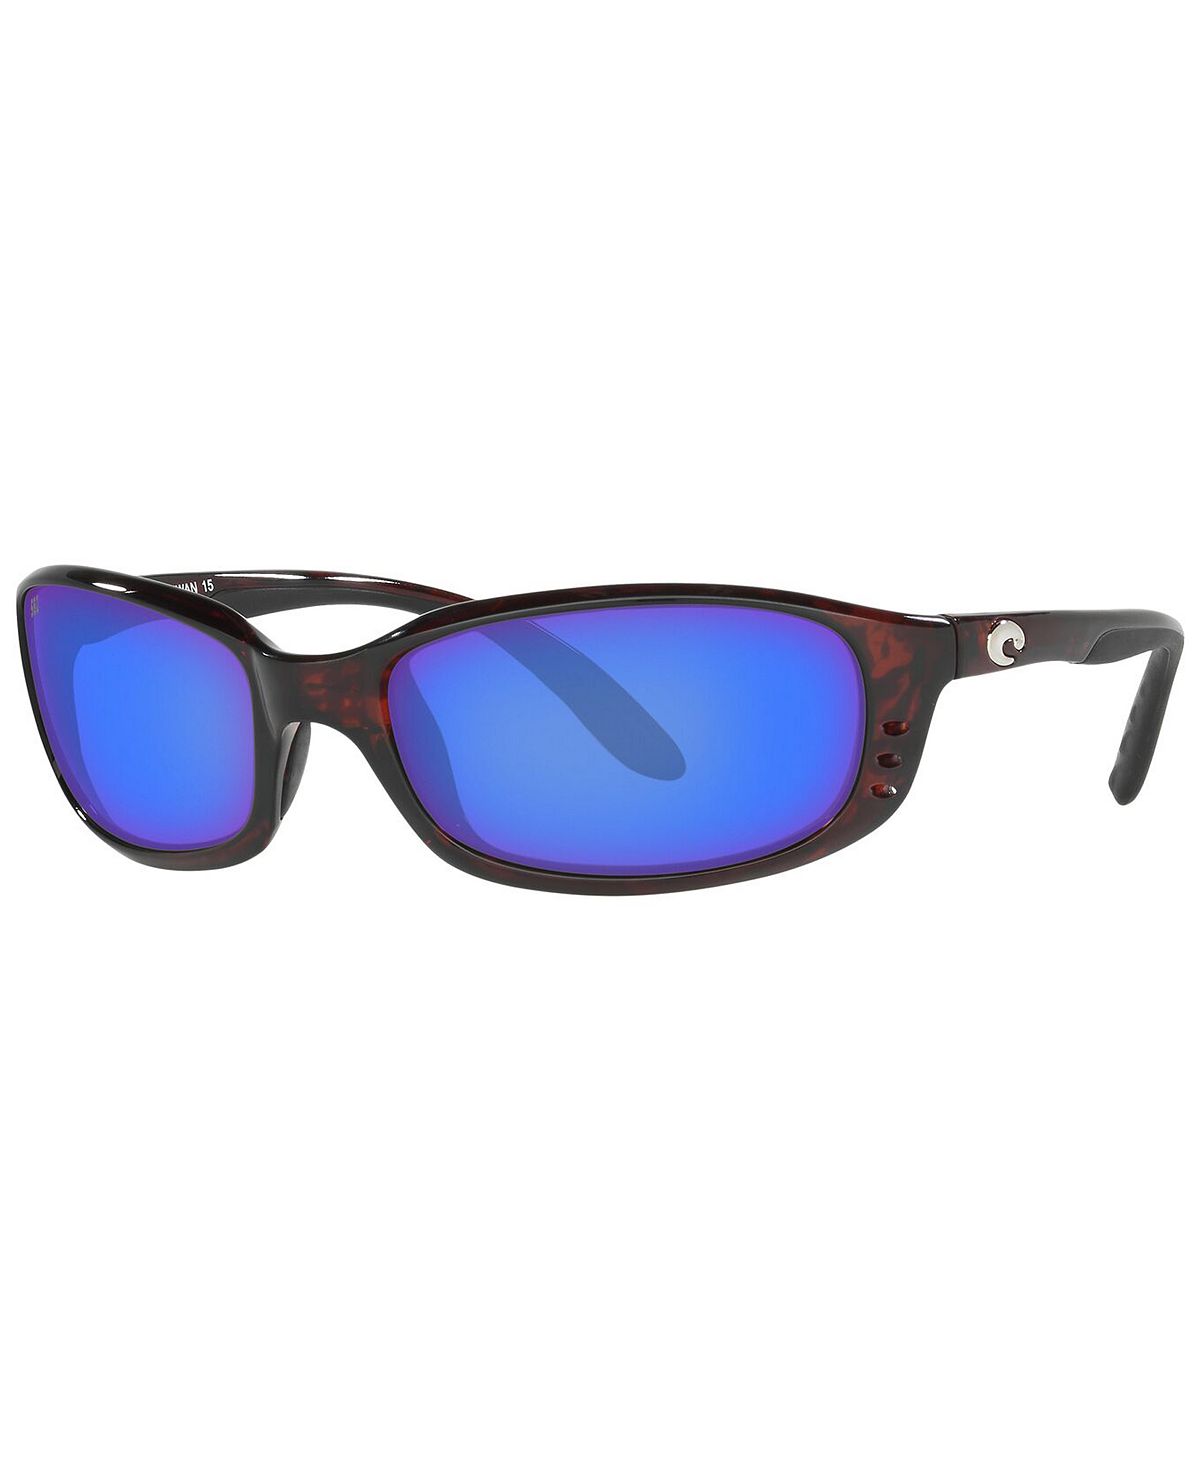 Мужские поляризованные солнцезащитные очки Brine Costa Del Mar